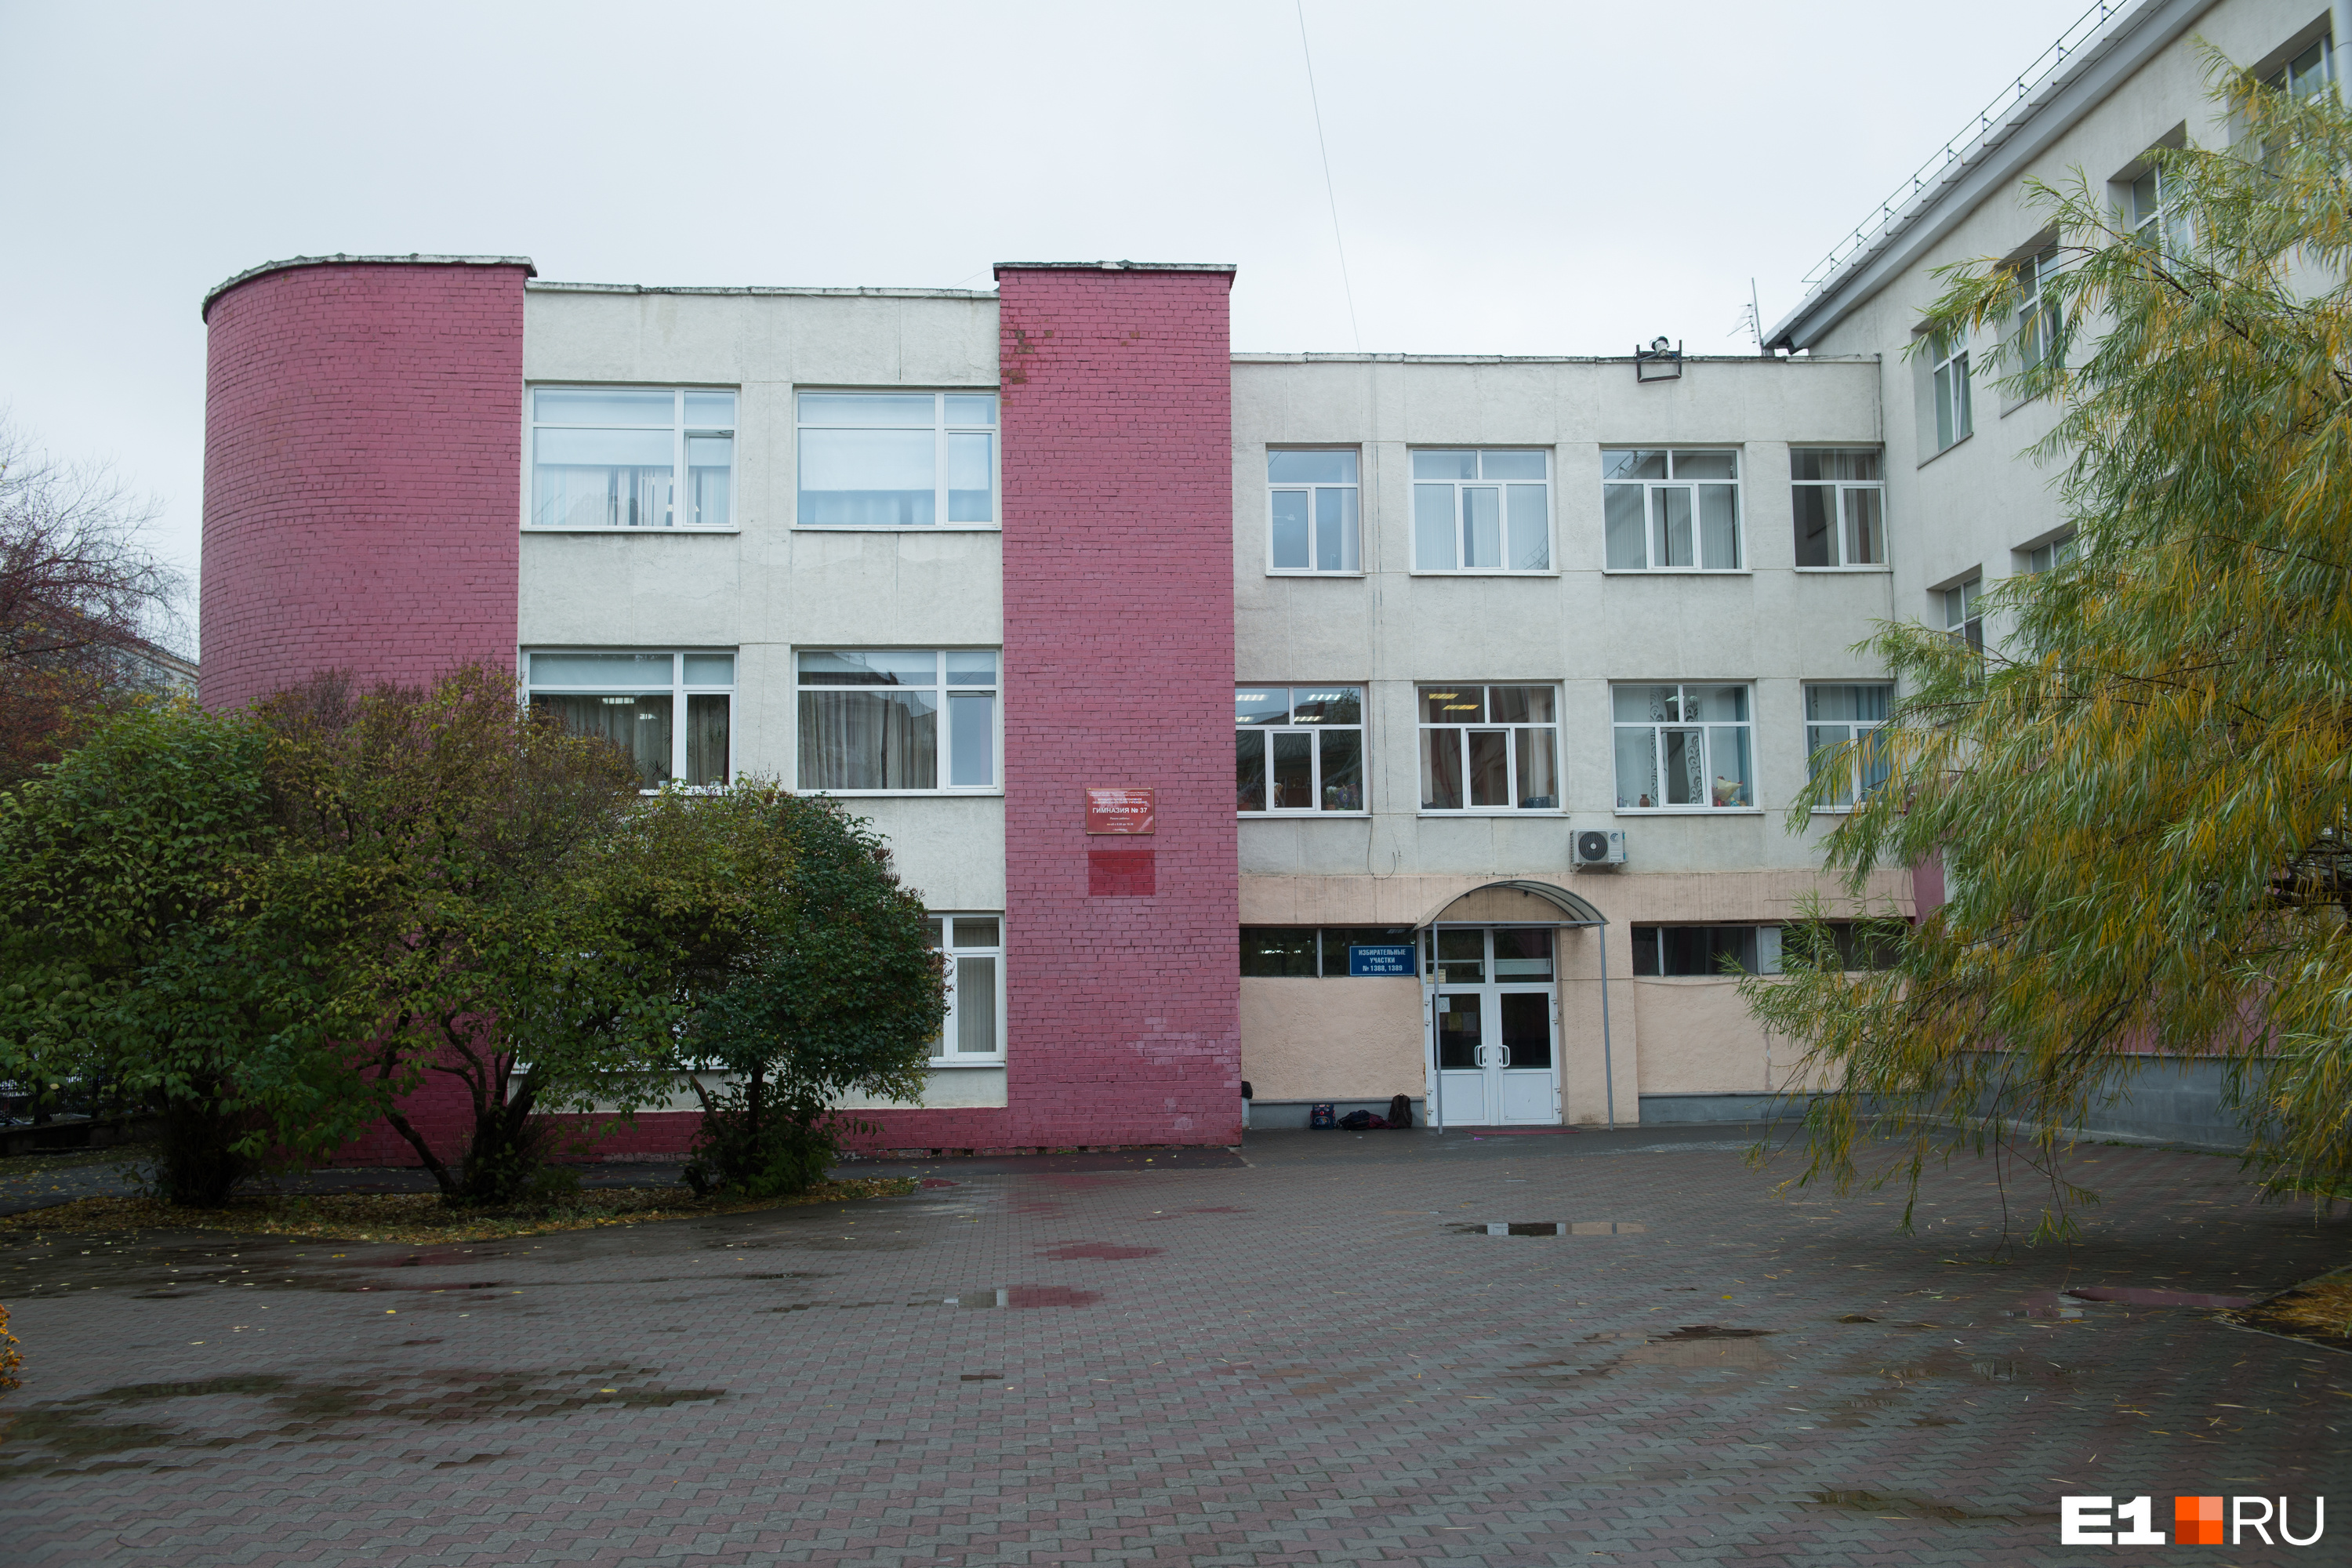 57 Школа Екатеринбург. Школа 24 Екатеринбург. 99 Школа Екатеринбург. Екатеринбургская школа 3. Школа 57 екатеринбург